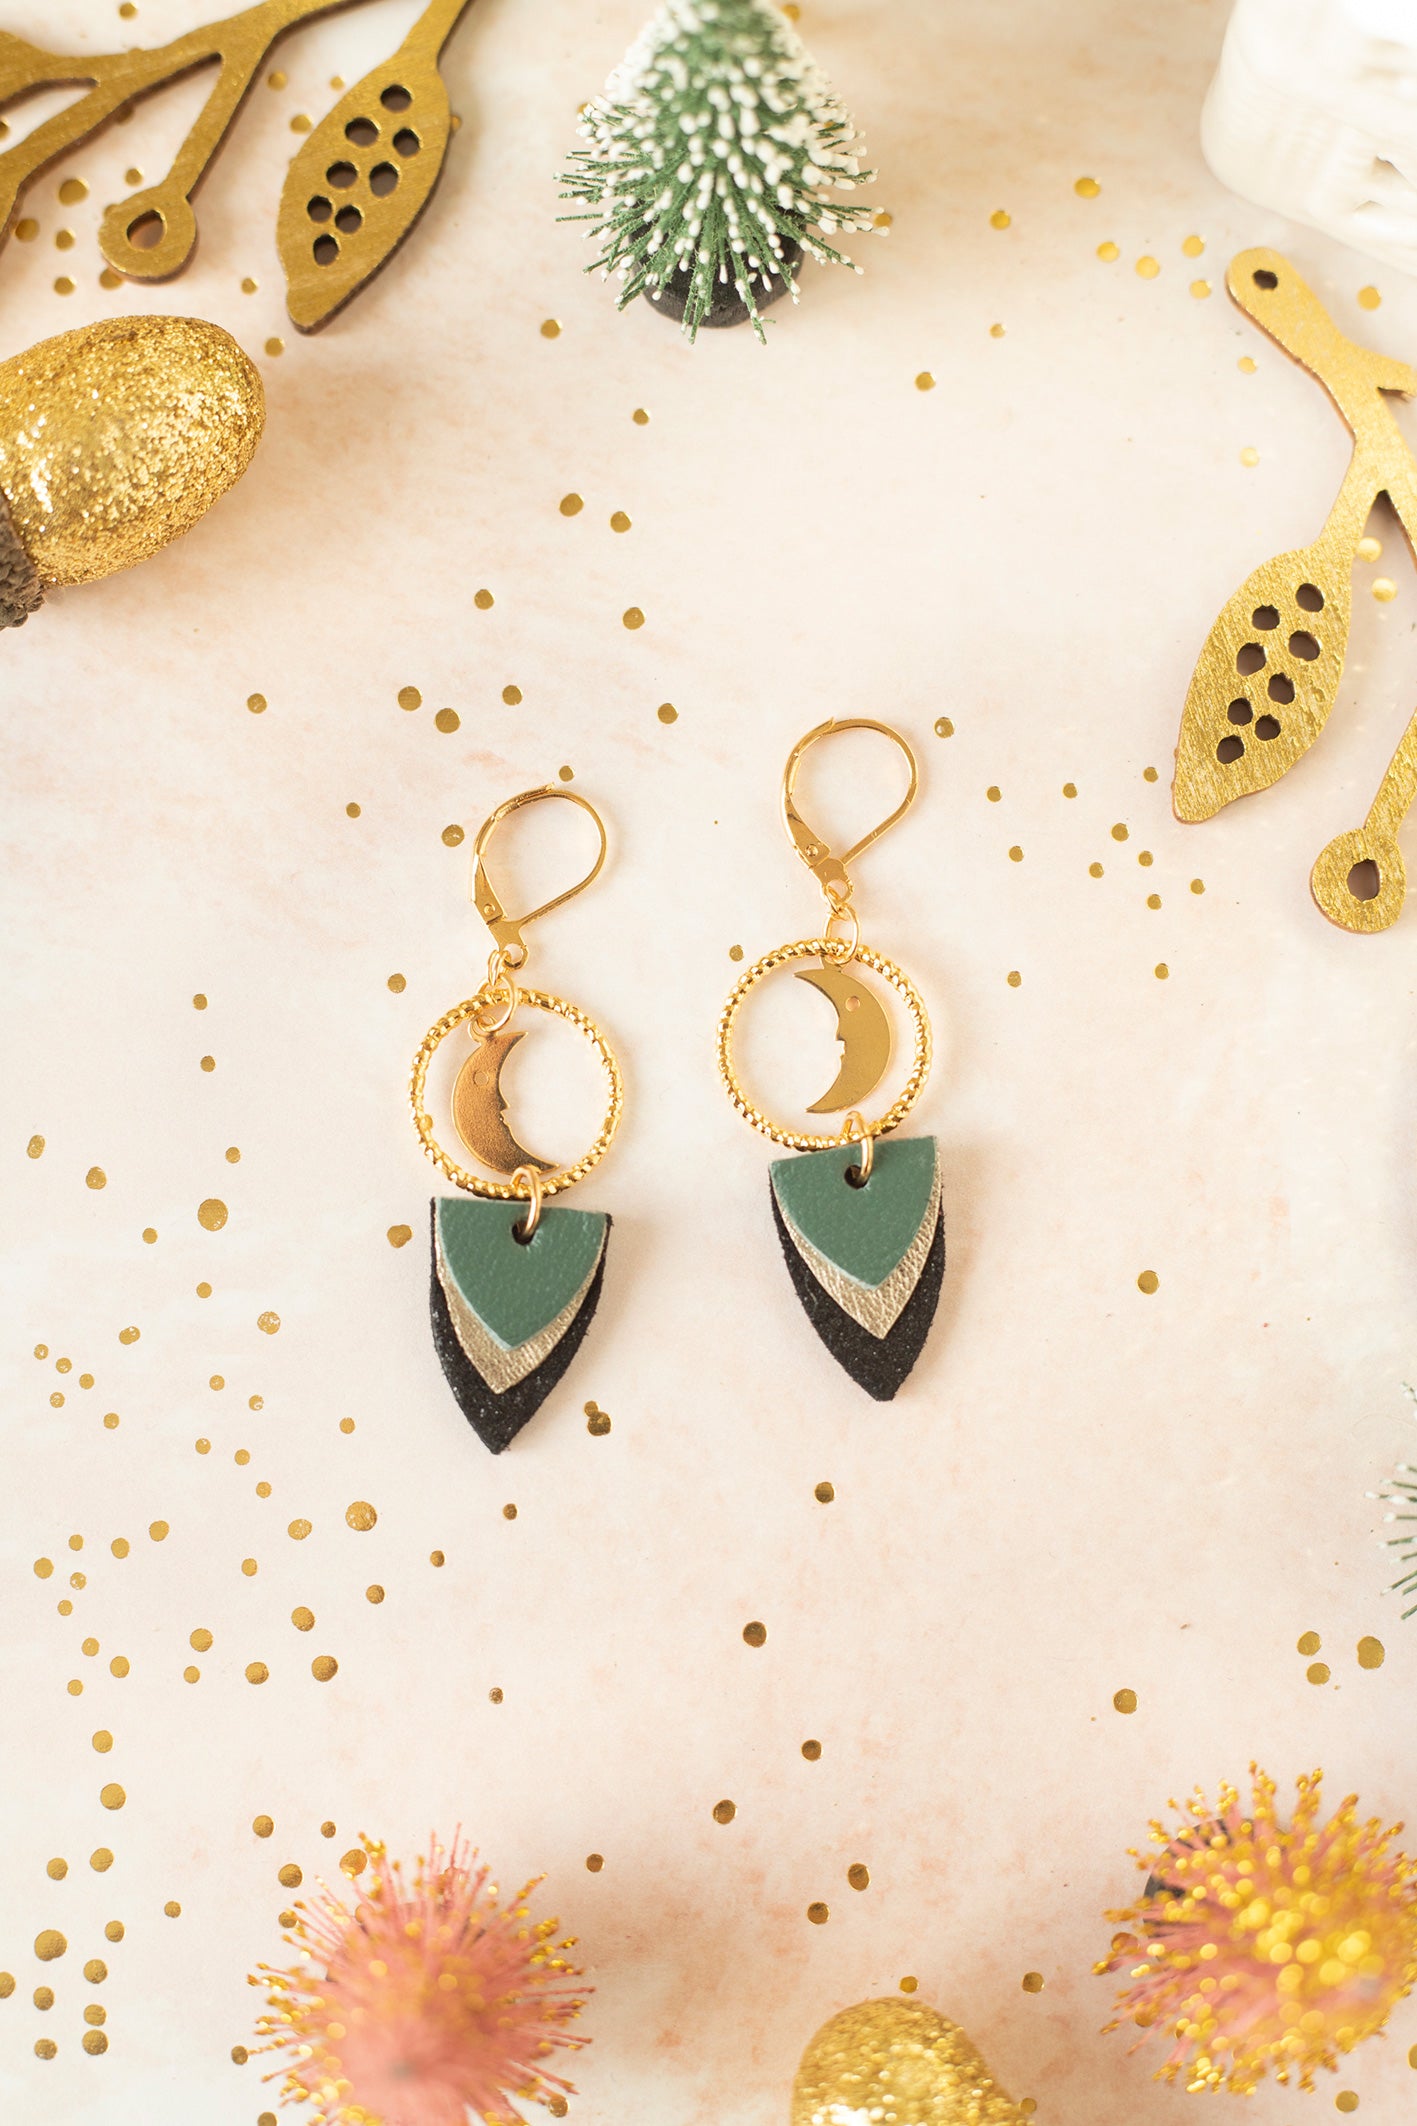 Green Ava earrings